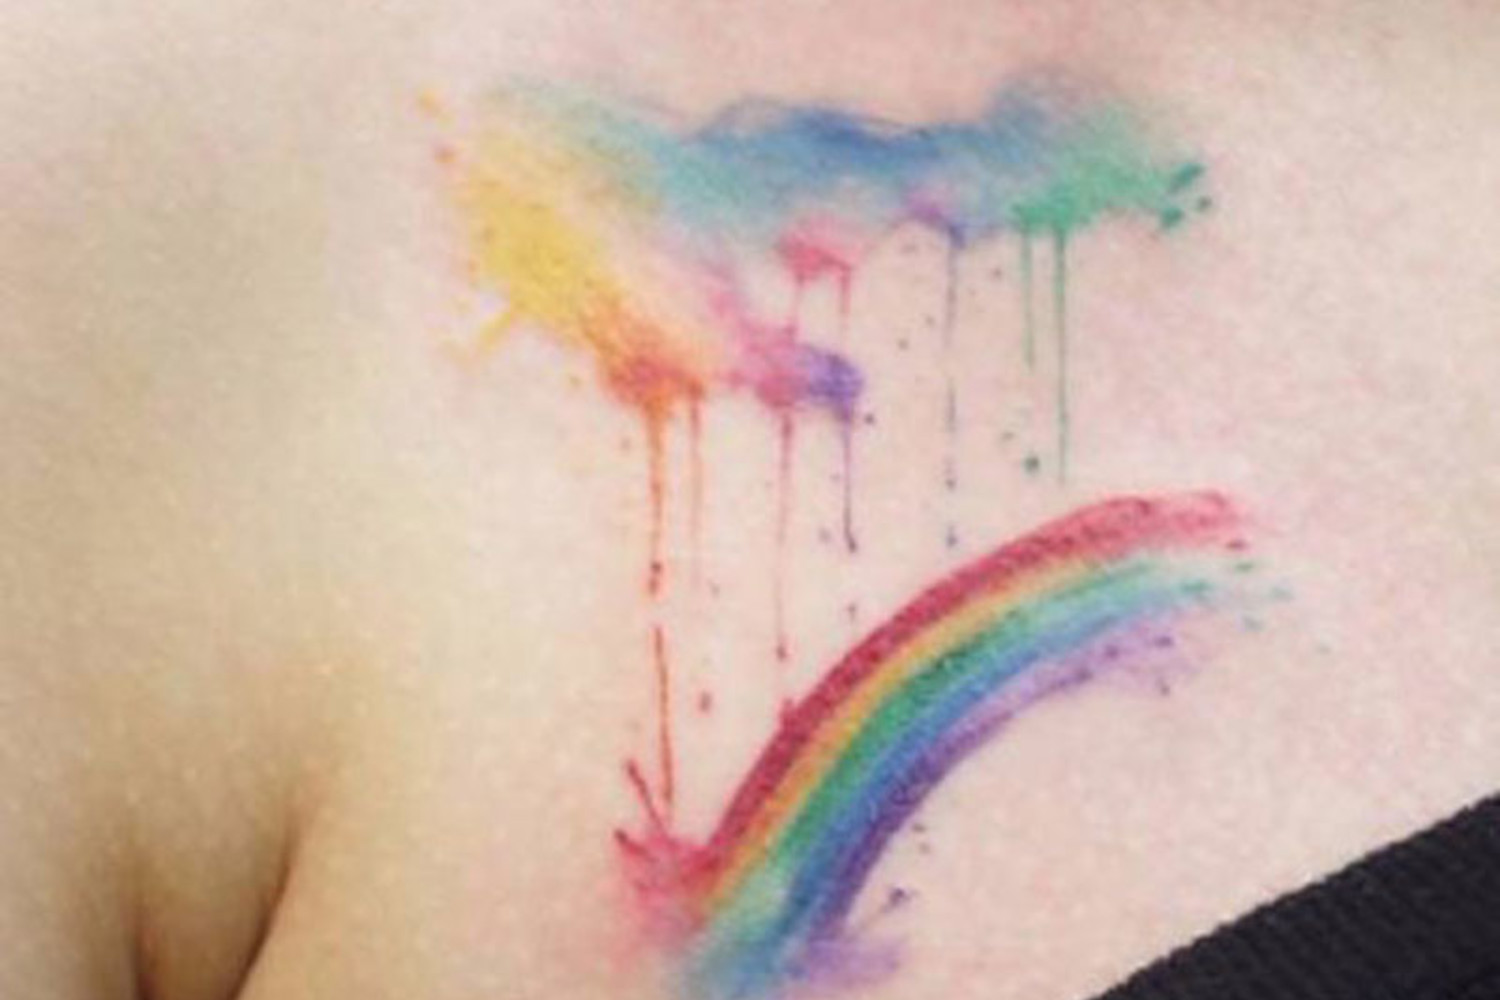 Apu Arts on Twitter Over the Rainbow apu apuarts tatuaje tattoo  tattoos cdmx tattooartist soulmate soulmatetattoo almagemela  almagemelatatto almagemelatatuaje rainbow rainbowtattoo rainbowtatuaje  arcoiris arcoiristattoo 